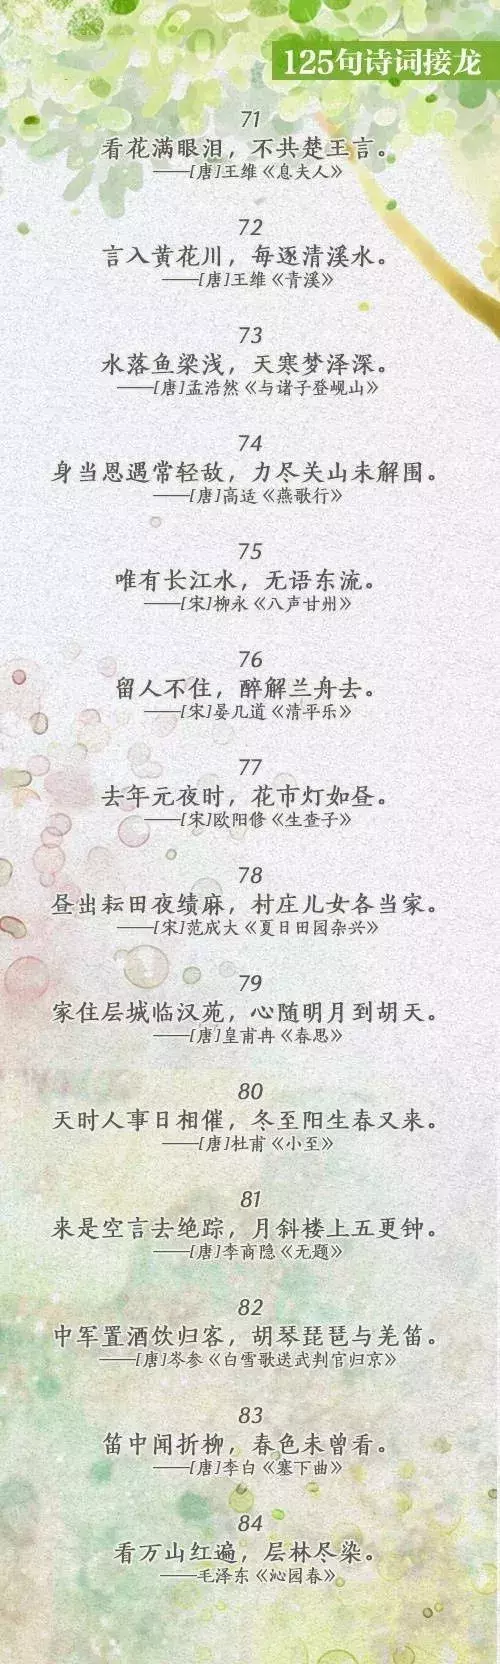 中国诗词大会丨趣味诗词接龙125句！一边玩接龙，一边品诗词